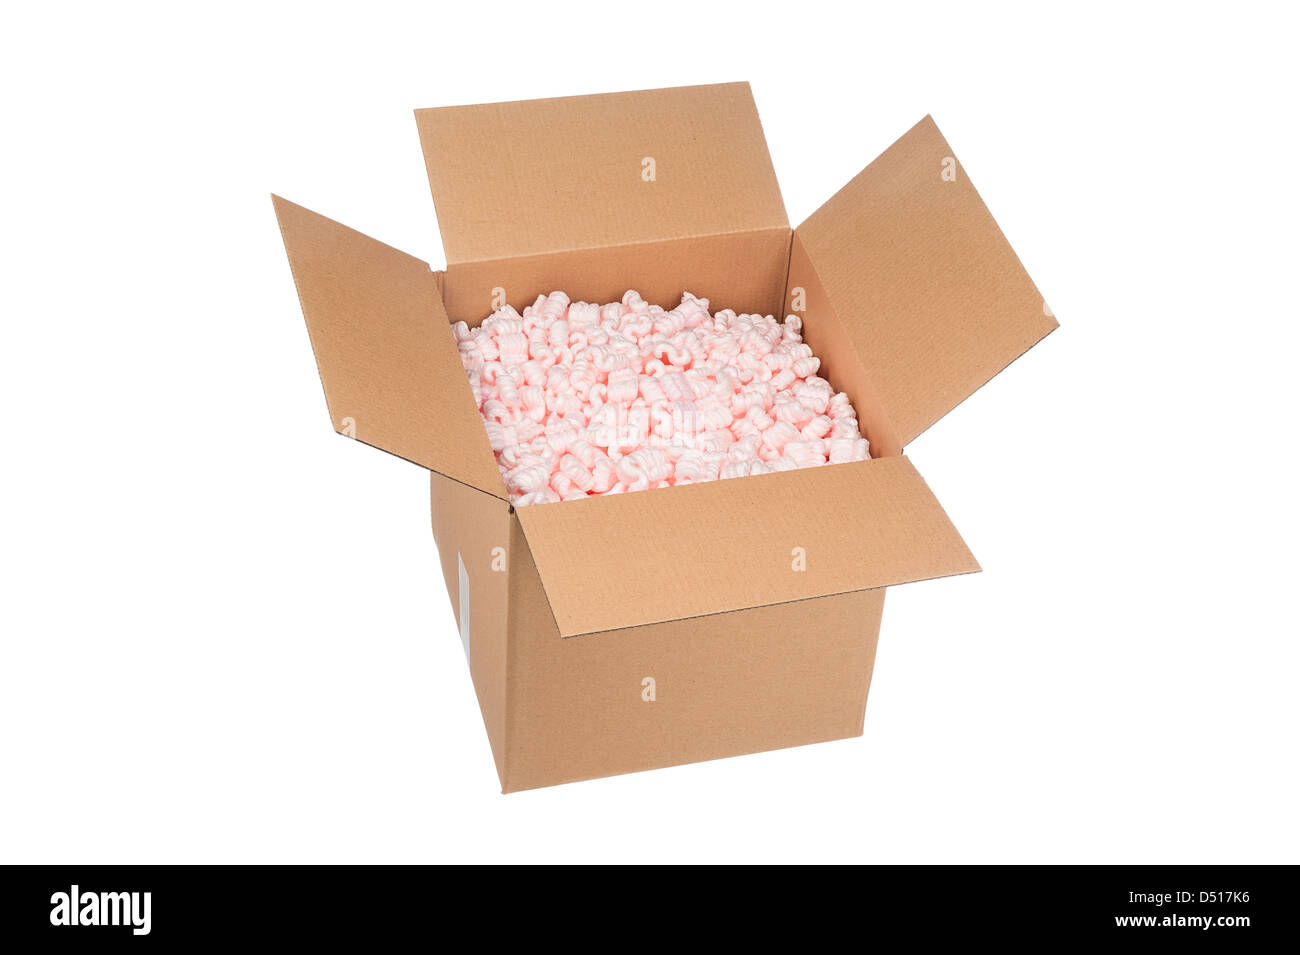 Una nueva caja de cartón lleno de cacahuetes de embalaje de protección rosa listos para su envío. Foto de stock